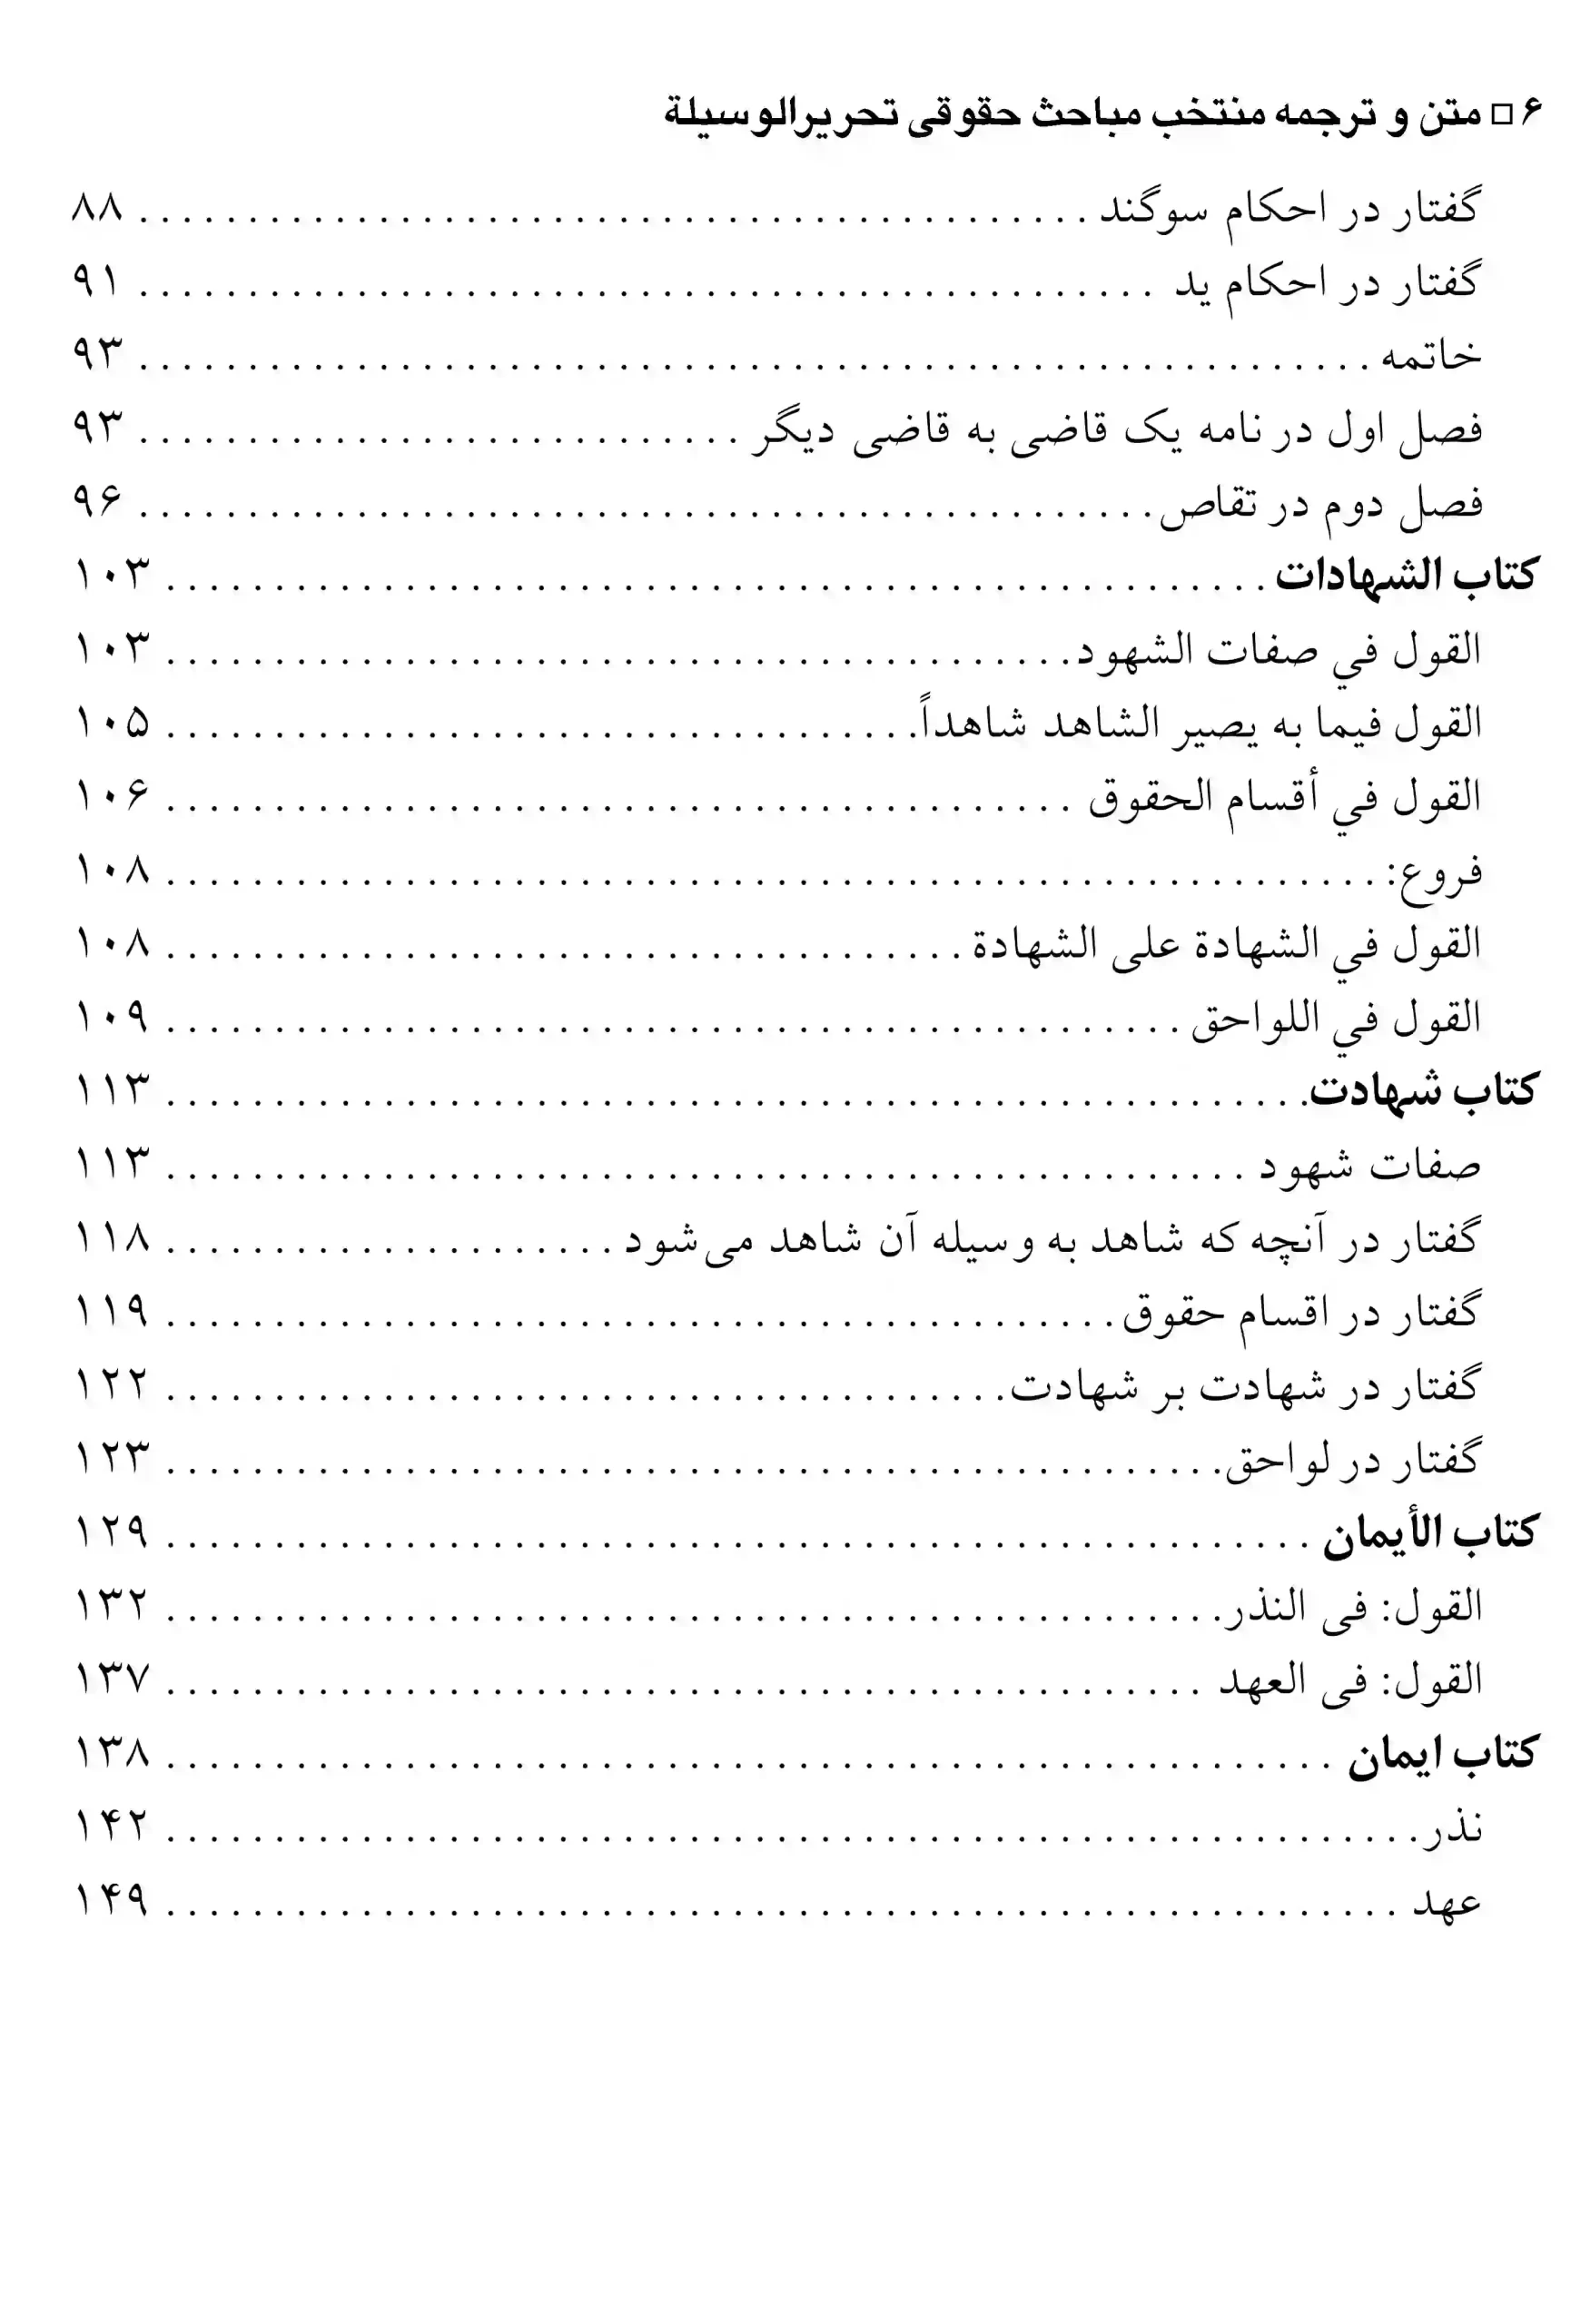 متن و ترجمه منتخب مباحث تحریرالوسیله امام خمینی